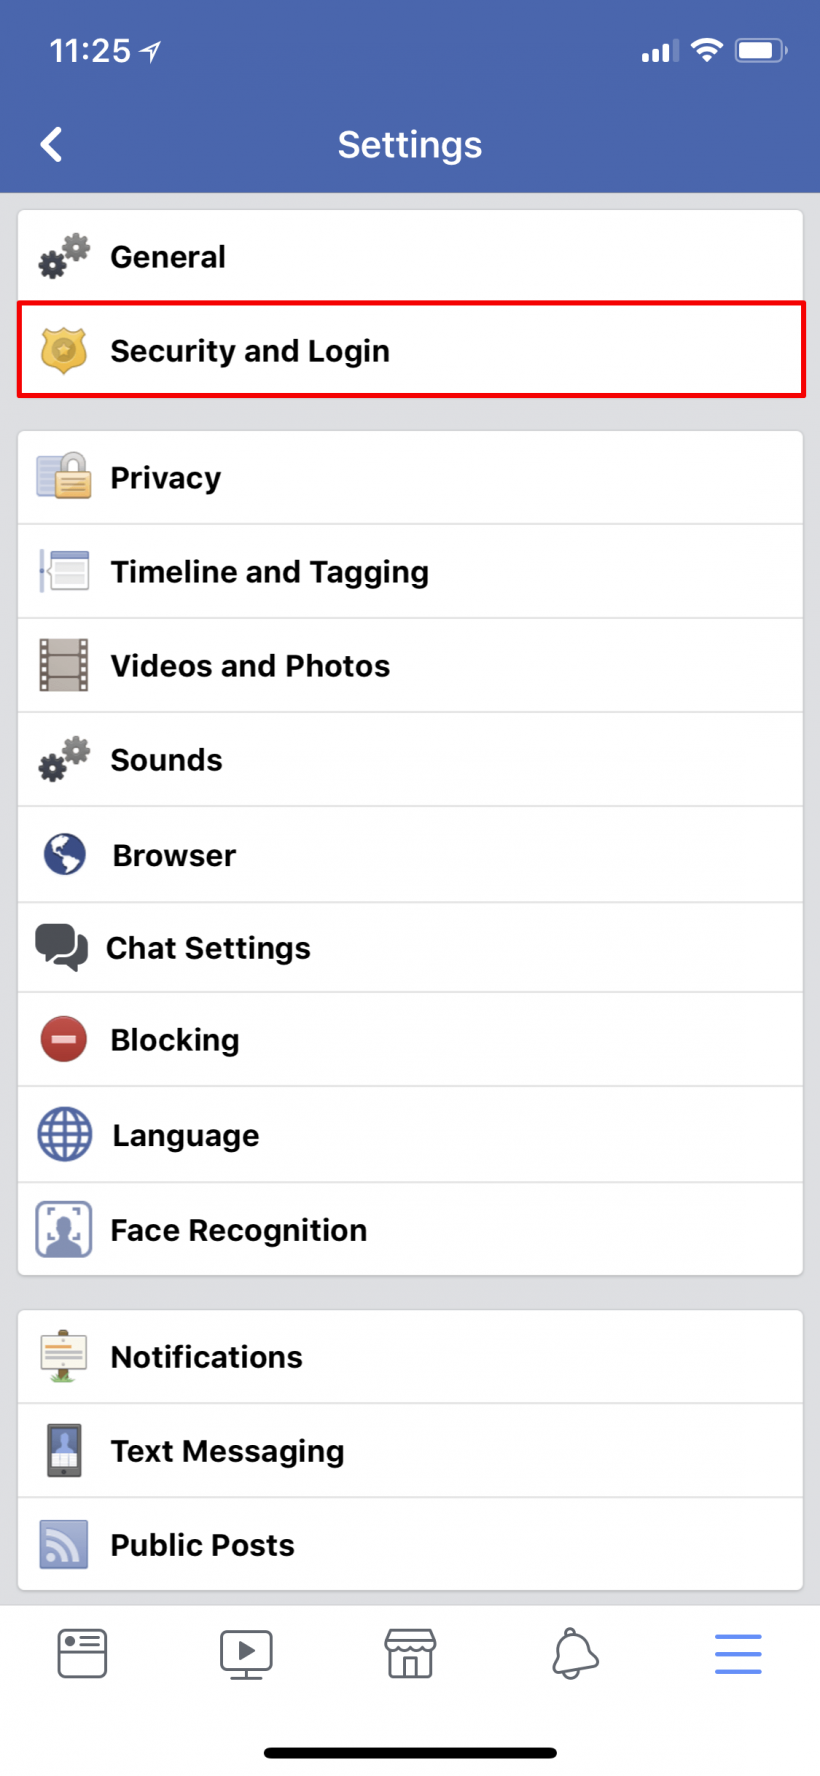 Como se activa la autenticación de dos factores 2FA en Facebook en el iPhone y el iPad.